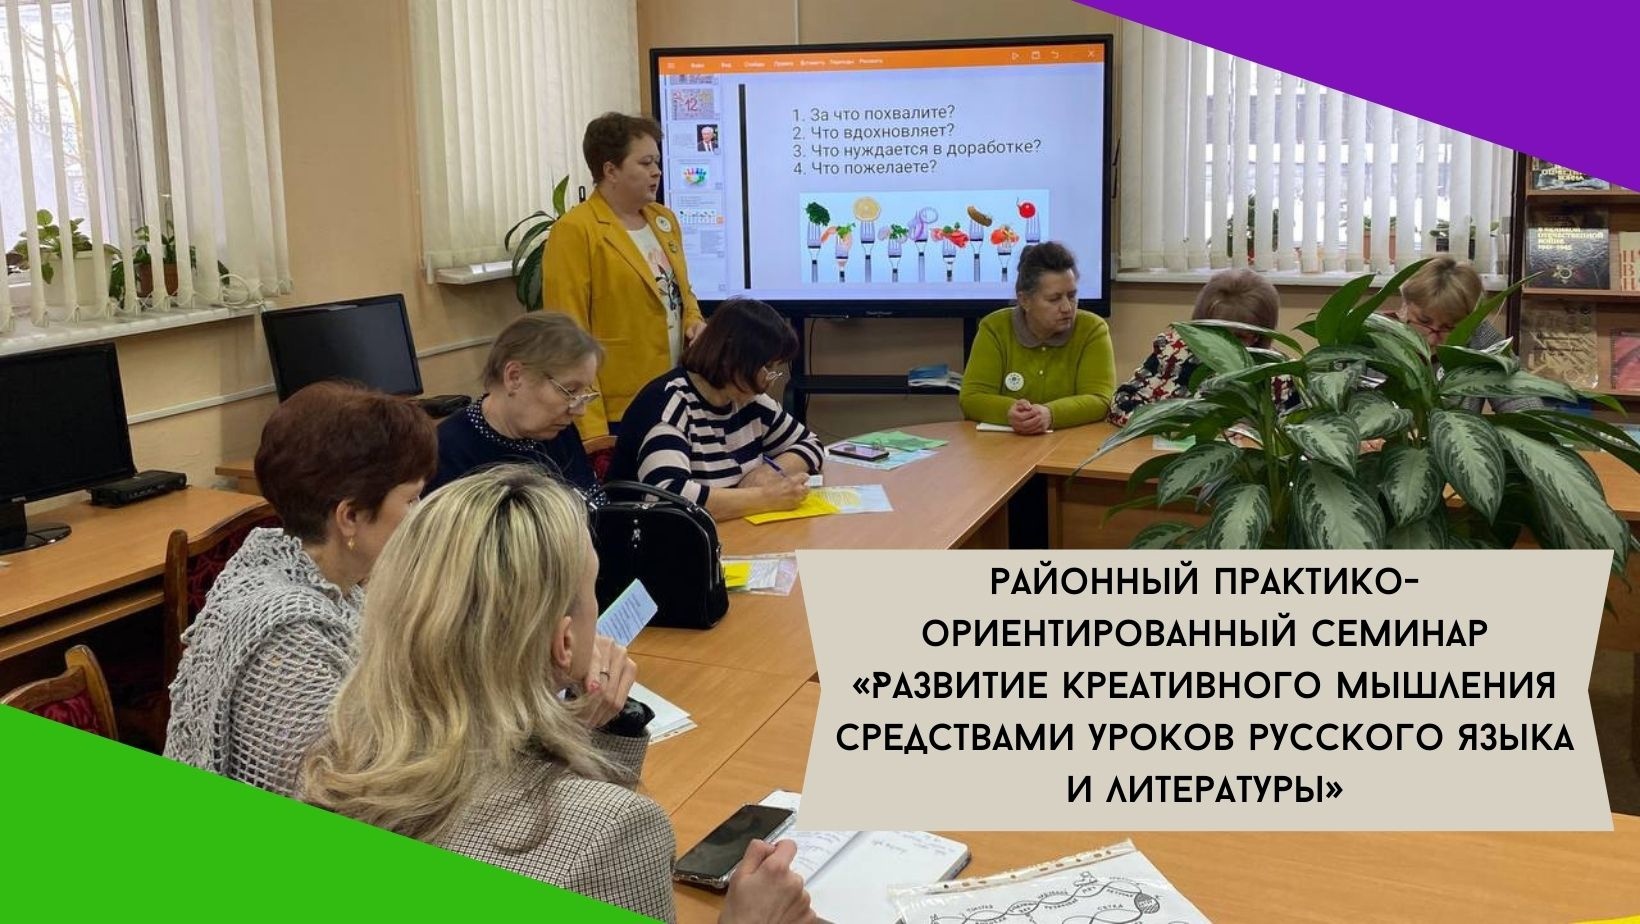 Районный практико-ориентированный семинар «Развитие креативного мышления средствами уроков русского языка и литературы».